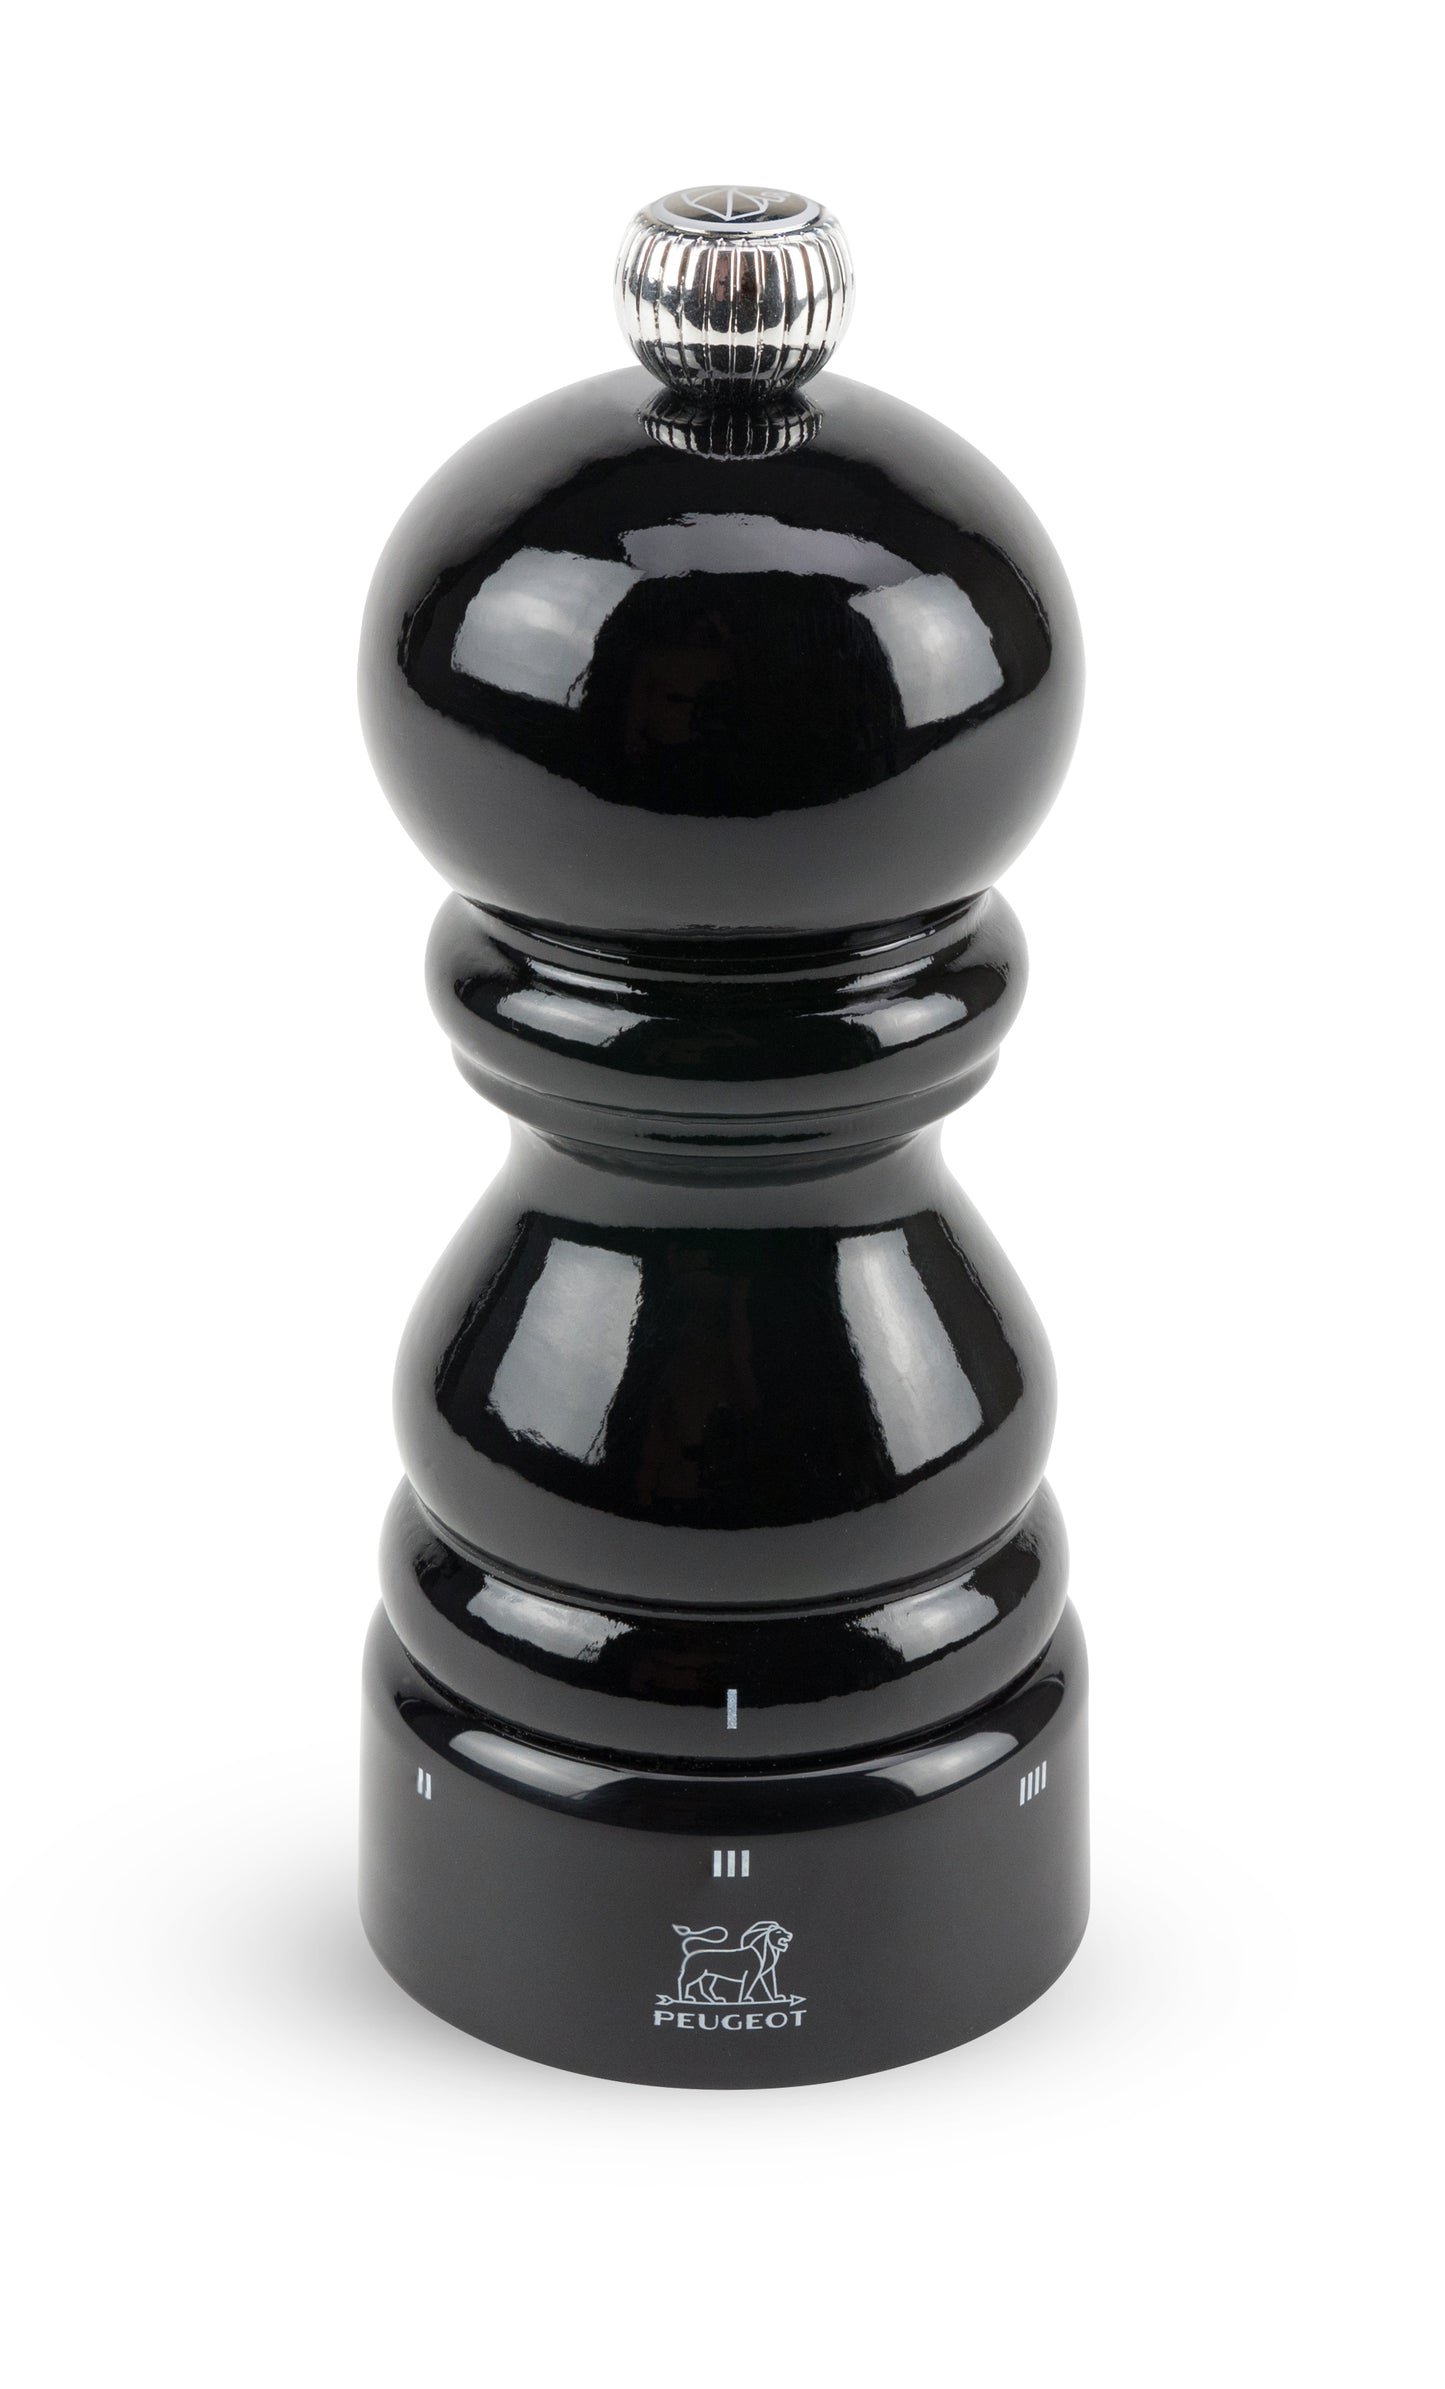 Peugeot Paris u'Select Salt Mill in black gloss, 12 cm